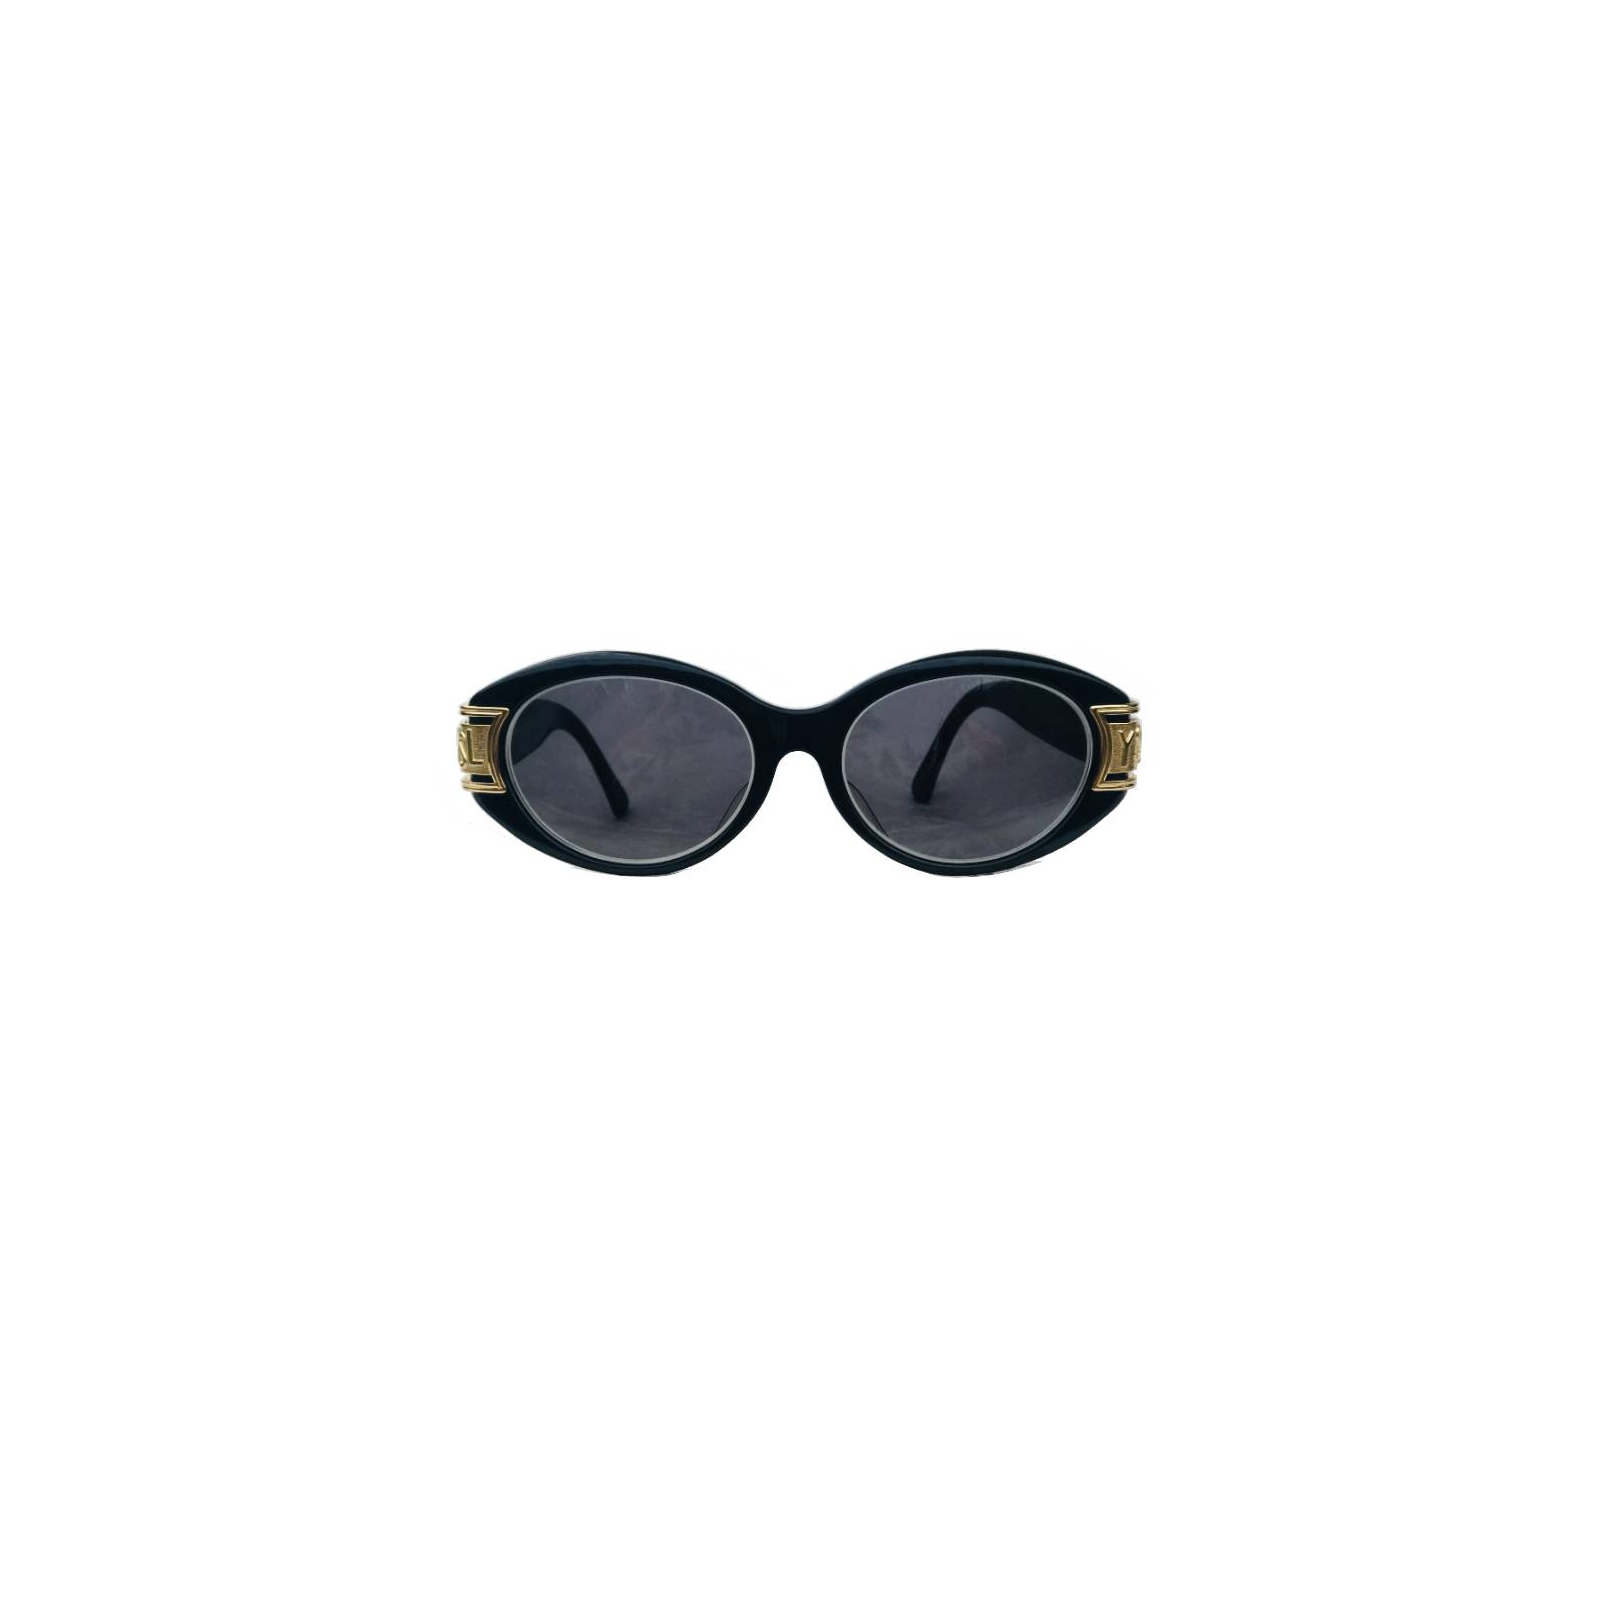 YSL okulary przeciwsłoneczne korekcyjne